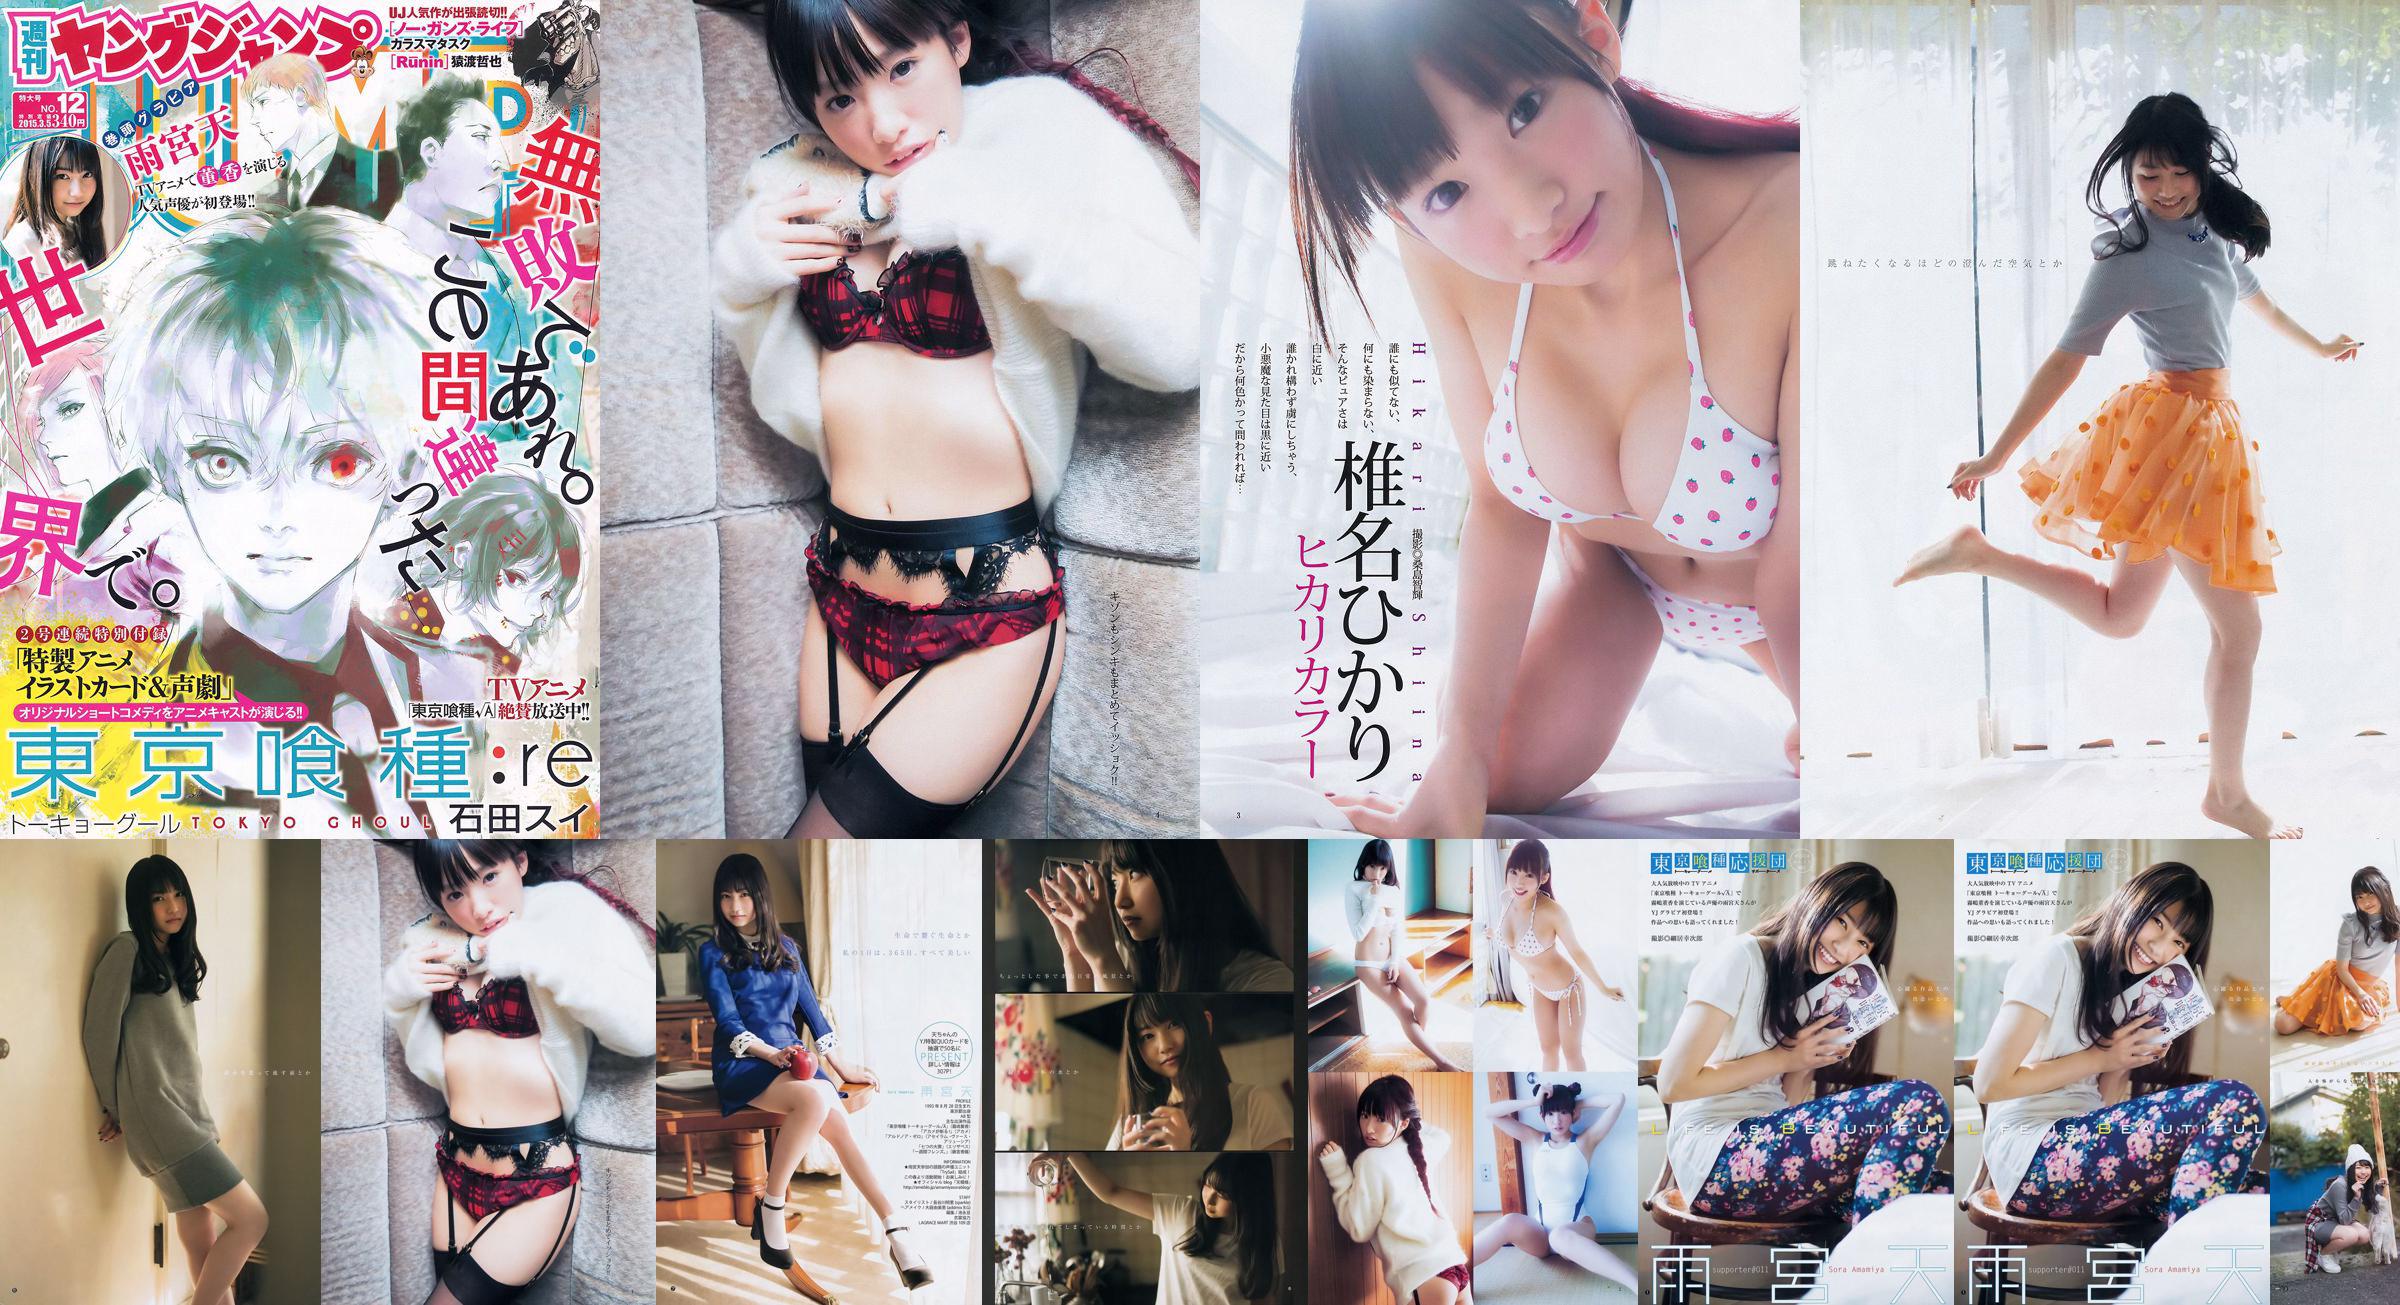 Amamiya Tian Shiina ひかり [Weekly Young Jump] 2015 No.12 Photo Magazine No.98ec93 Pagina 3